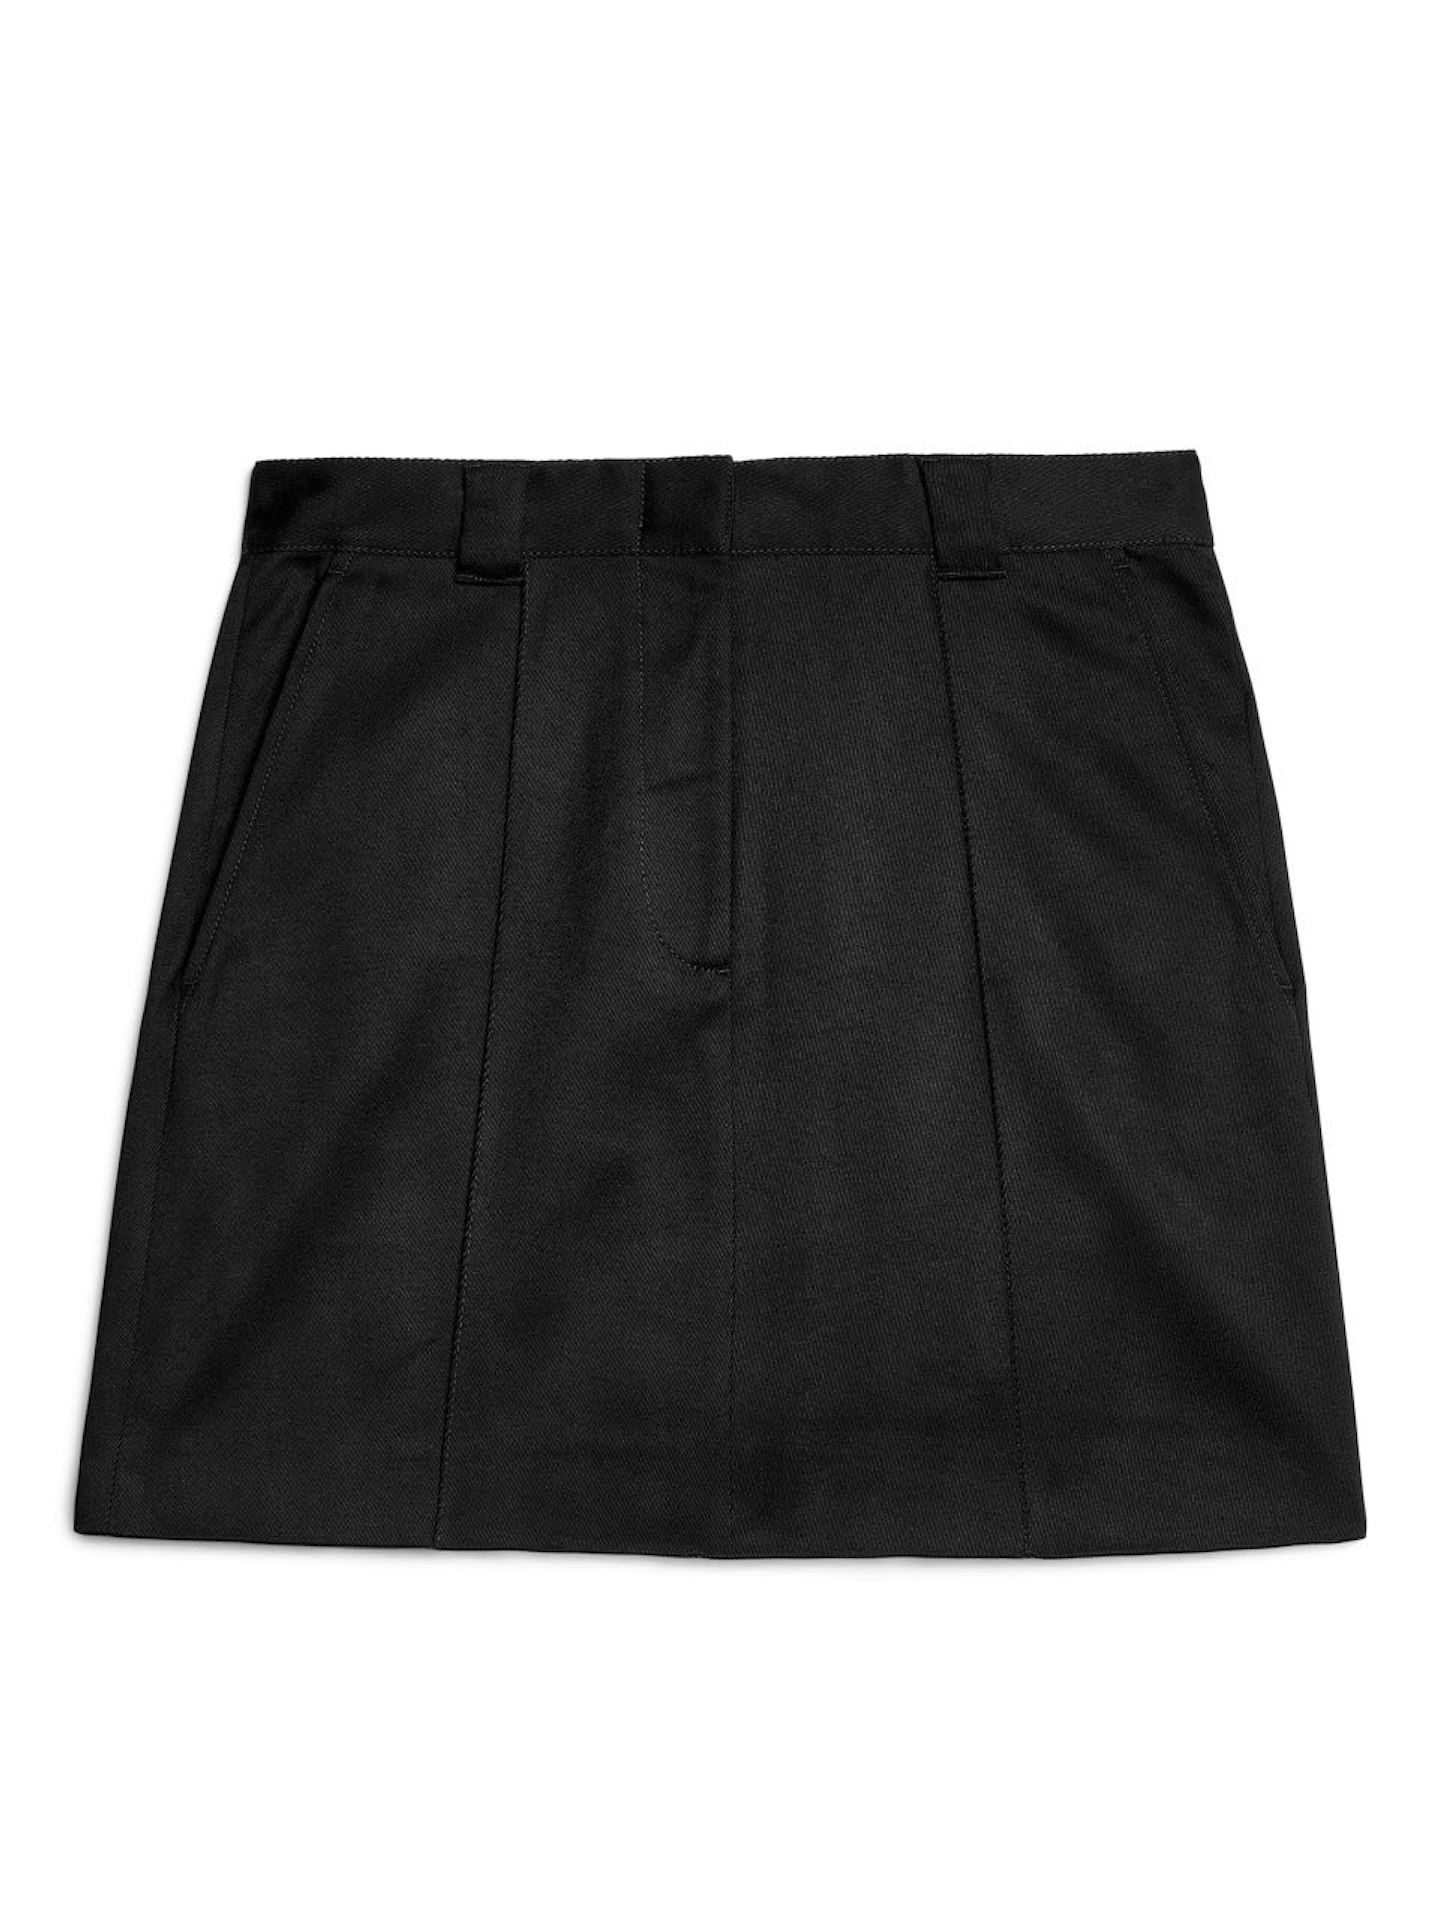 Arket, Black Twill Skirt